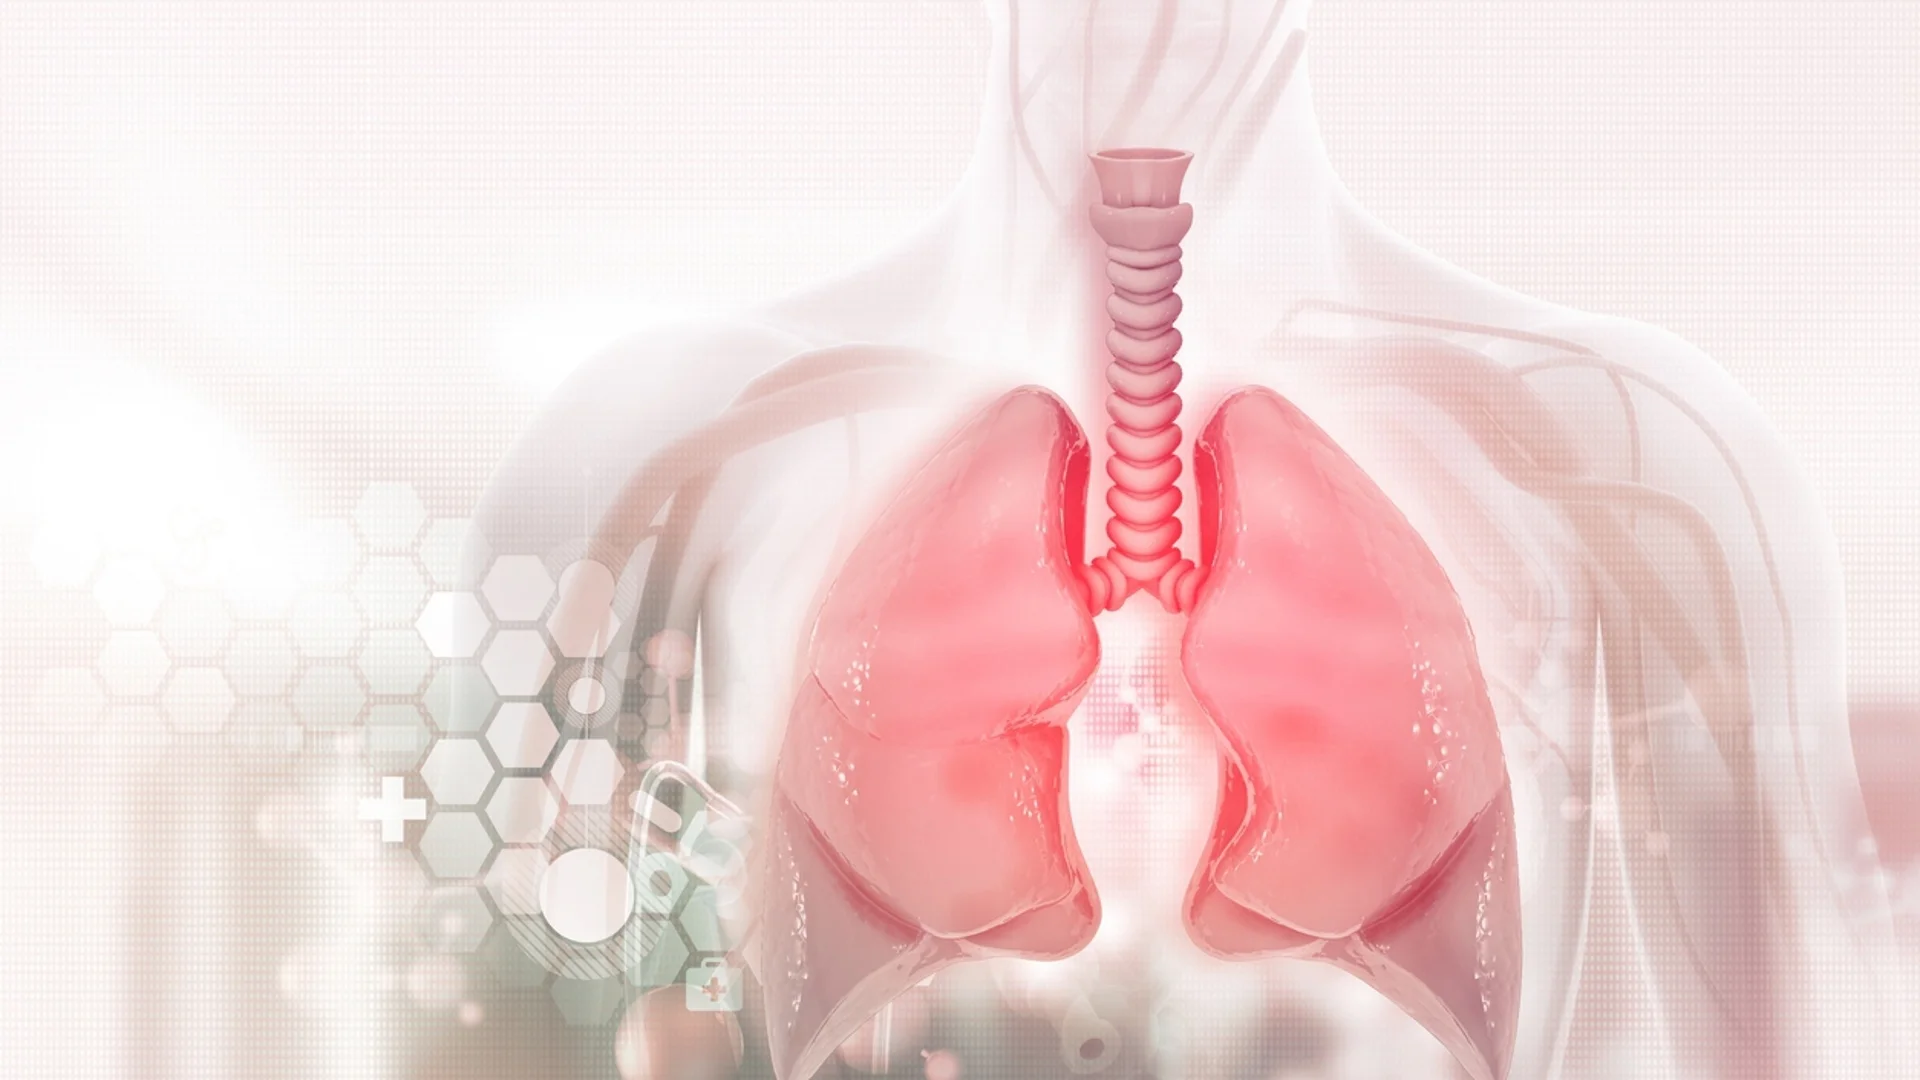 За здрави бели дробове - кои храни помагат най-много?